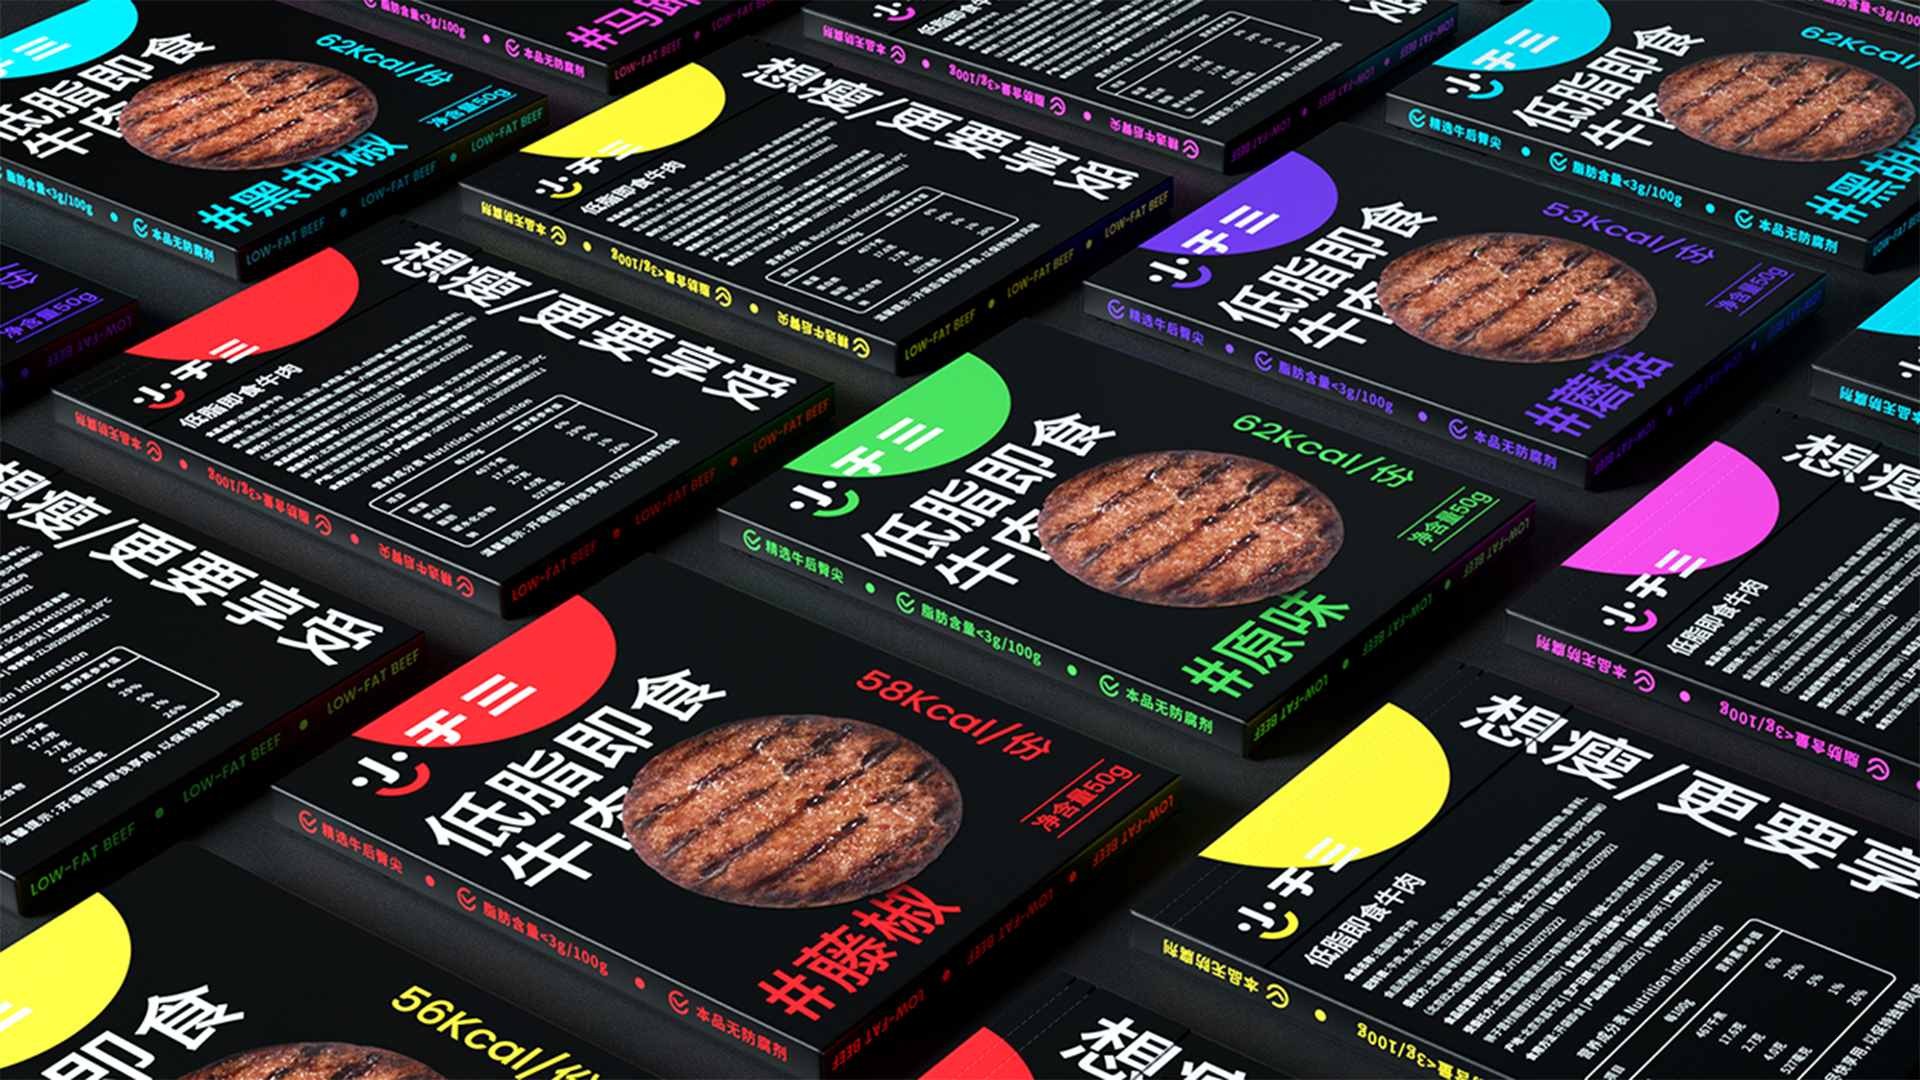 即食牛肉品牌视觉设计-小于三集团即食牛肉品牌设计